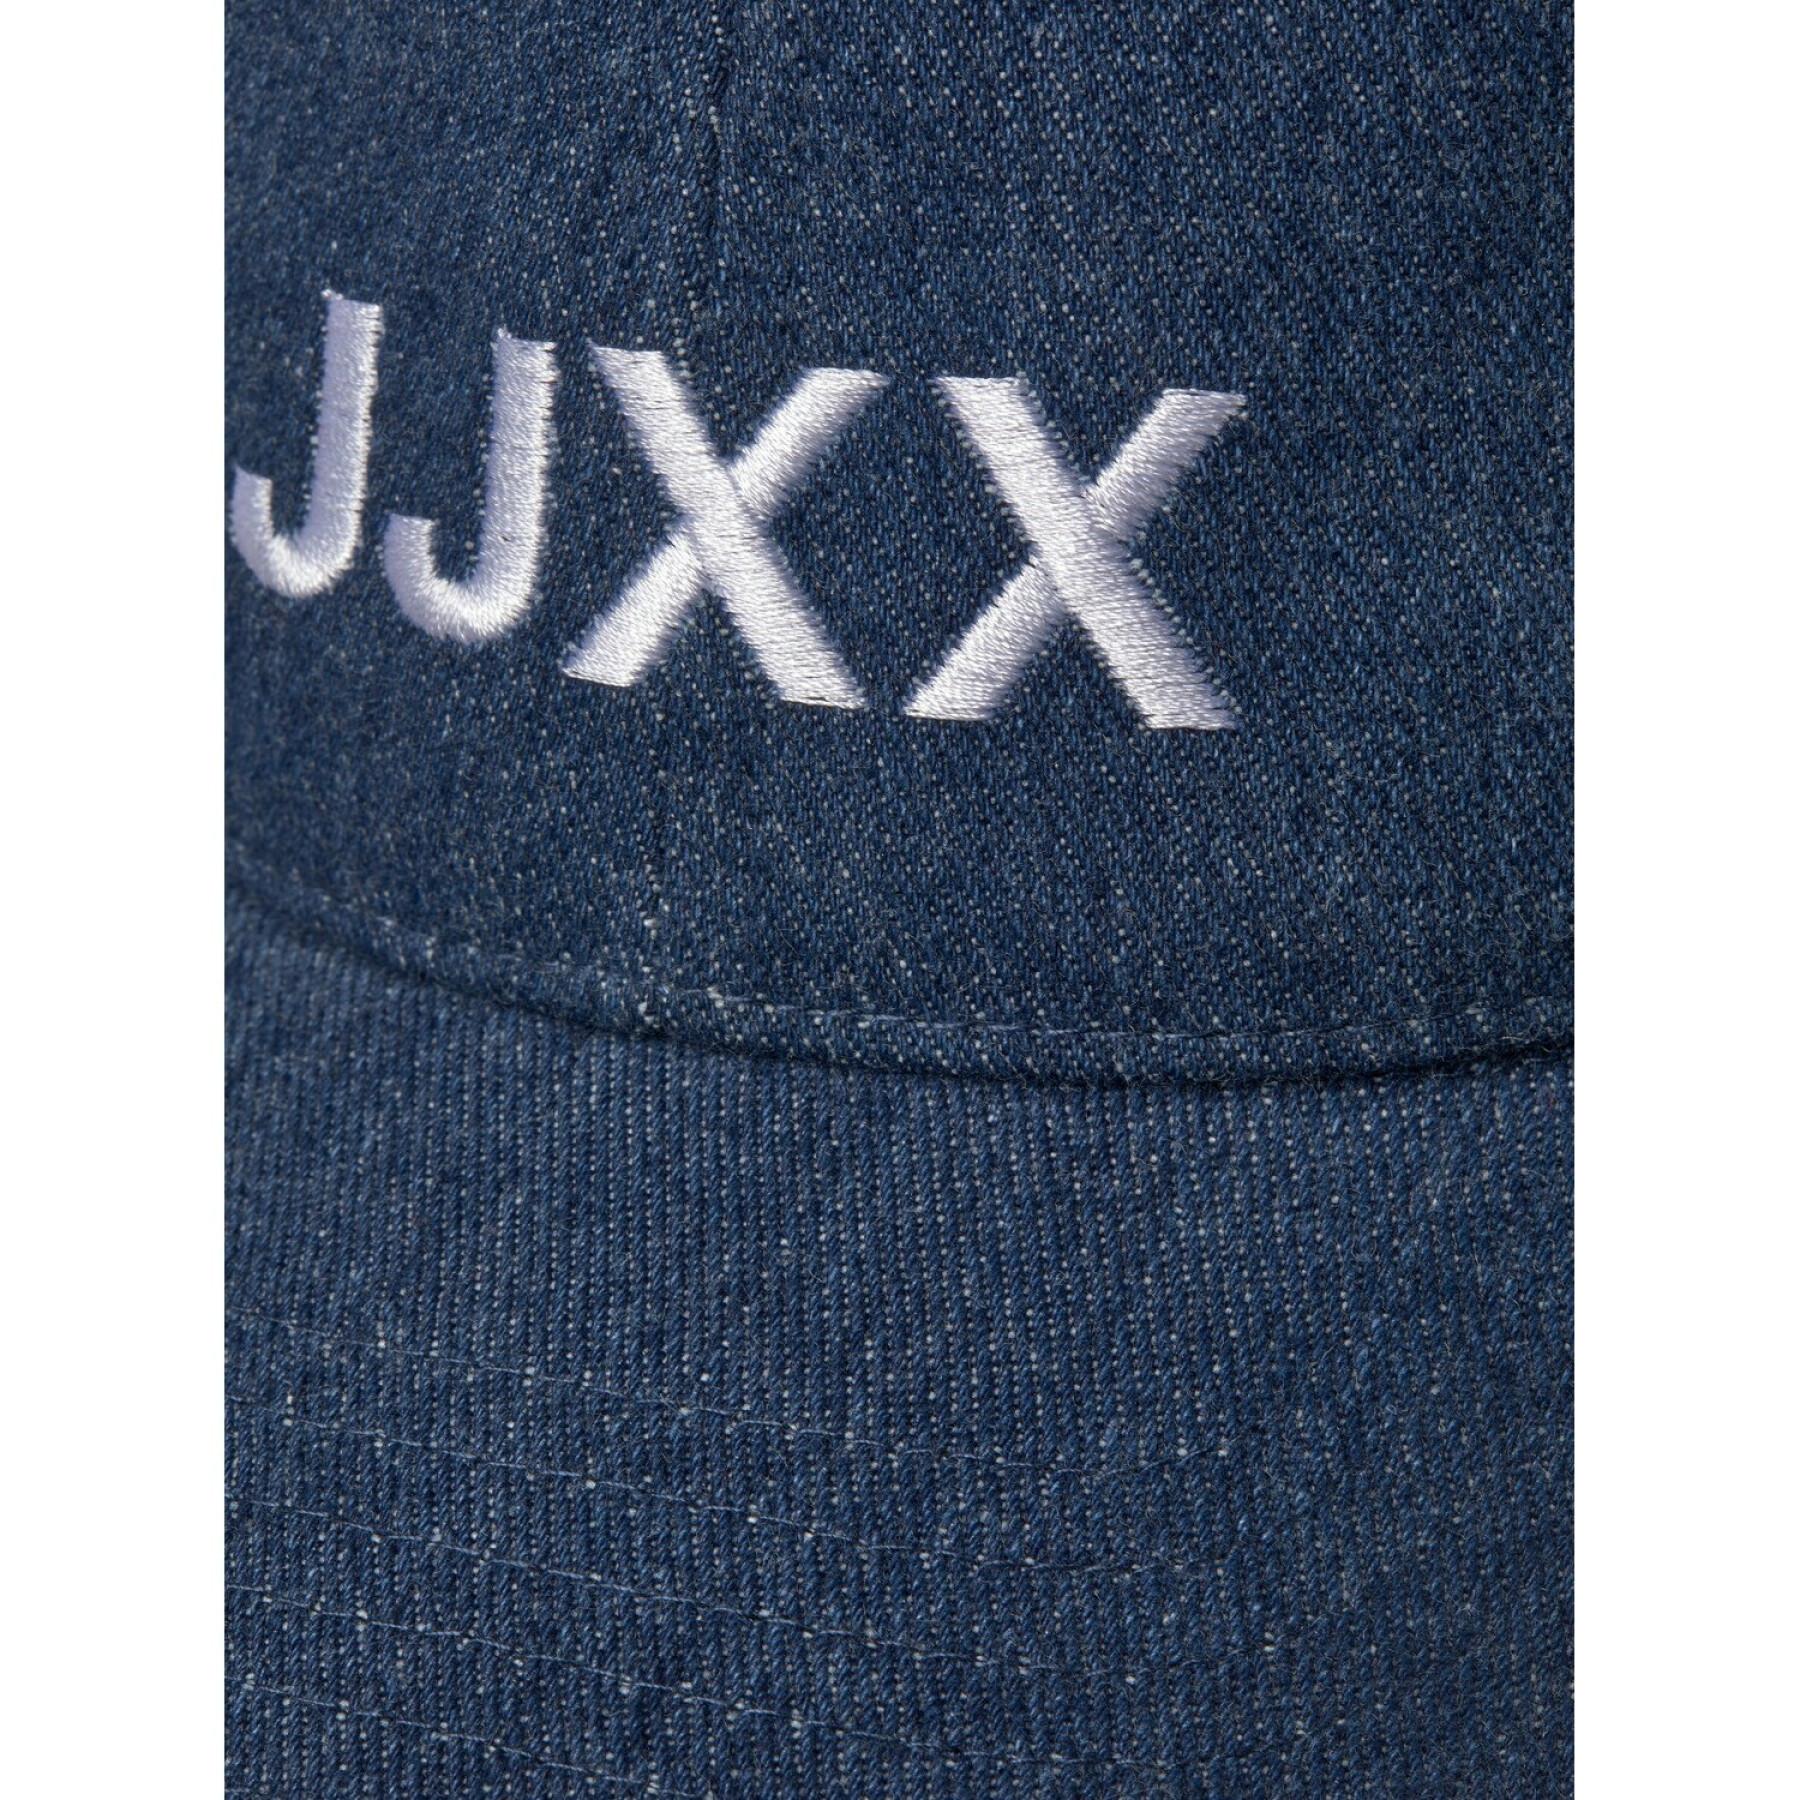 Women's cap JJXX basic big logo denim